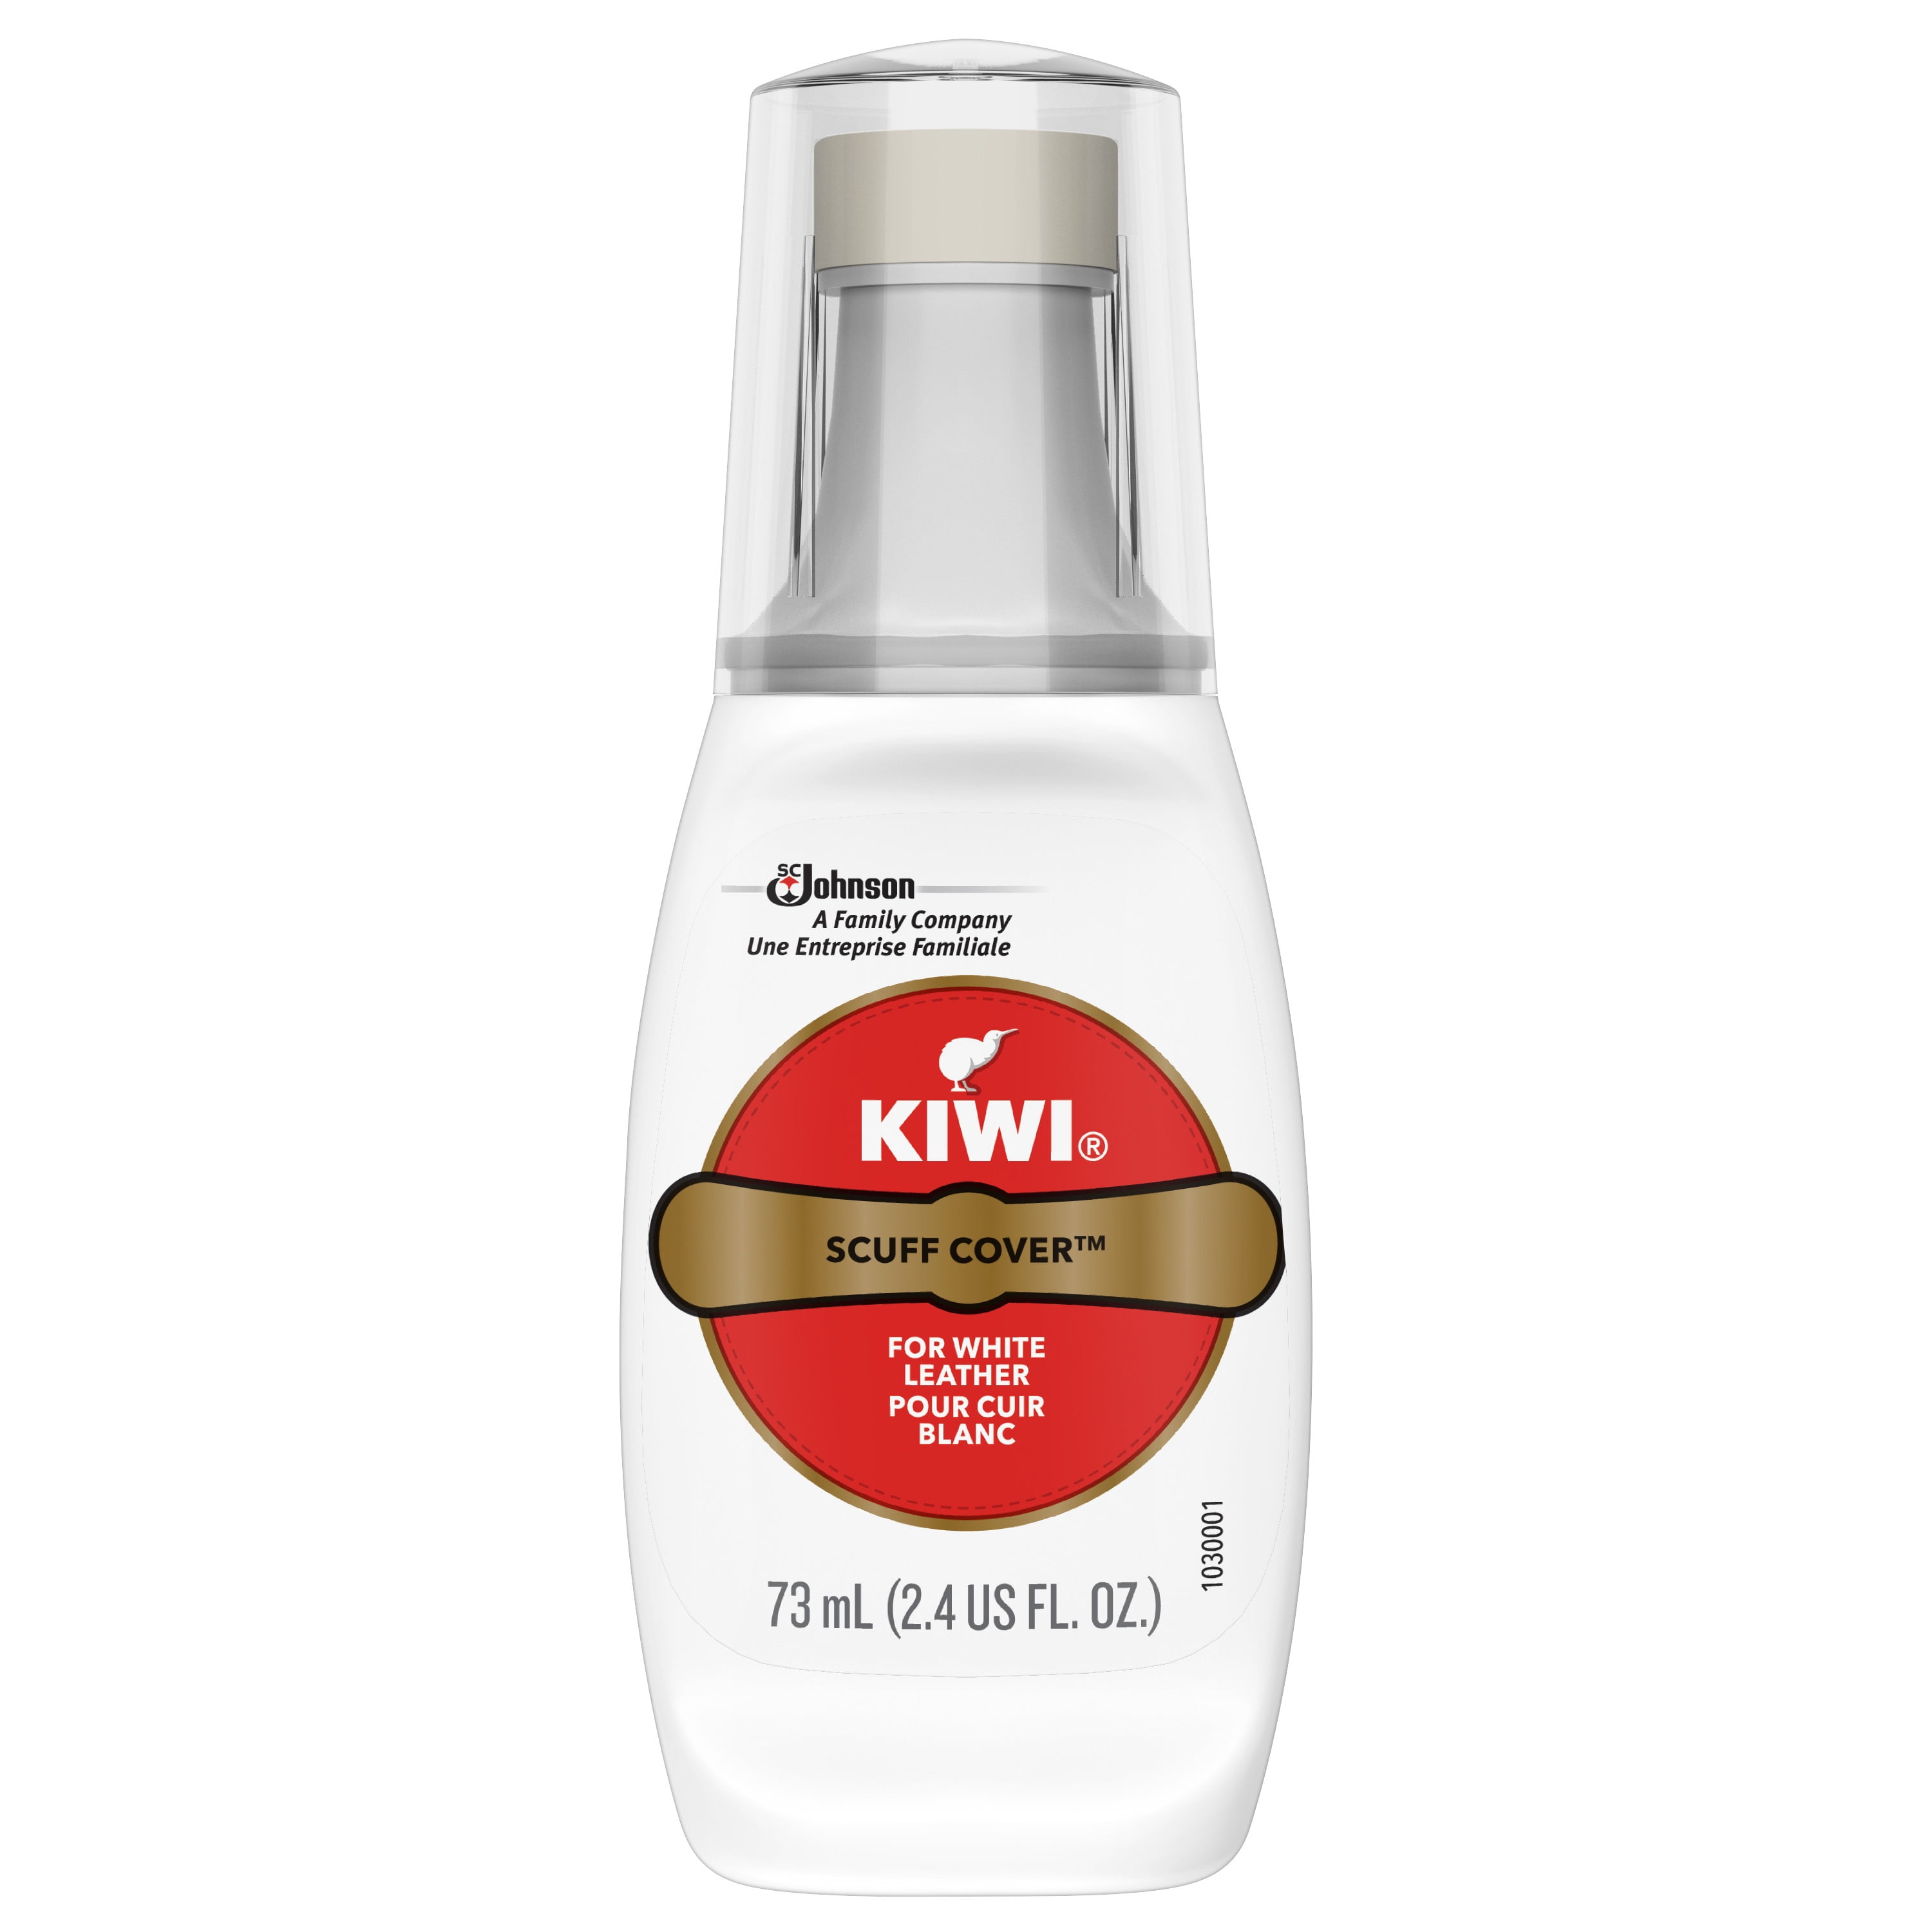 KIWI Scuff Cover Leather White 2.4 fl 